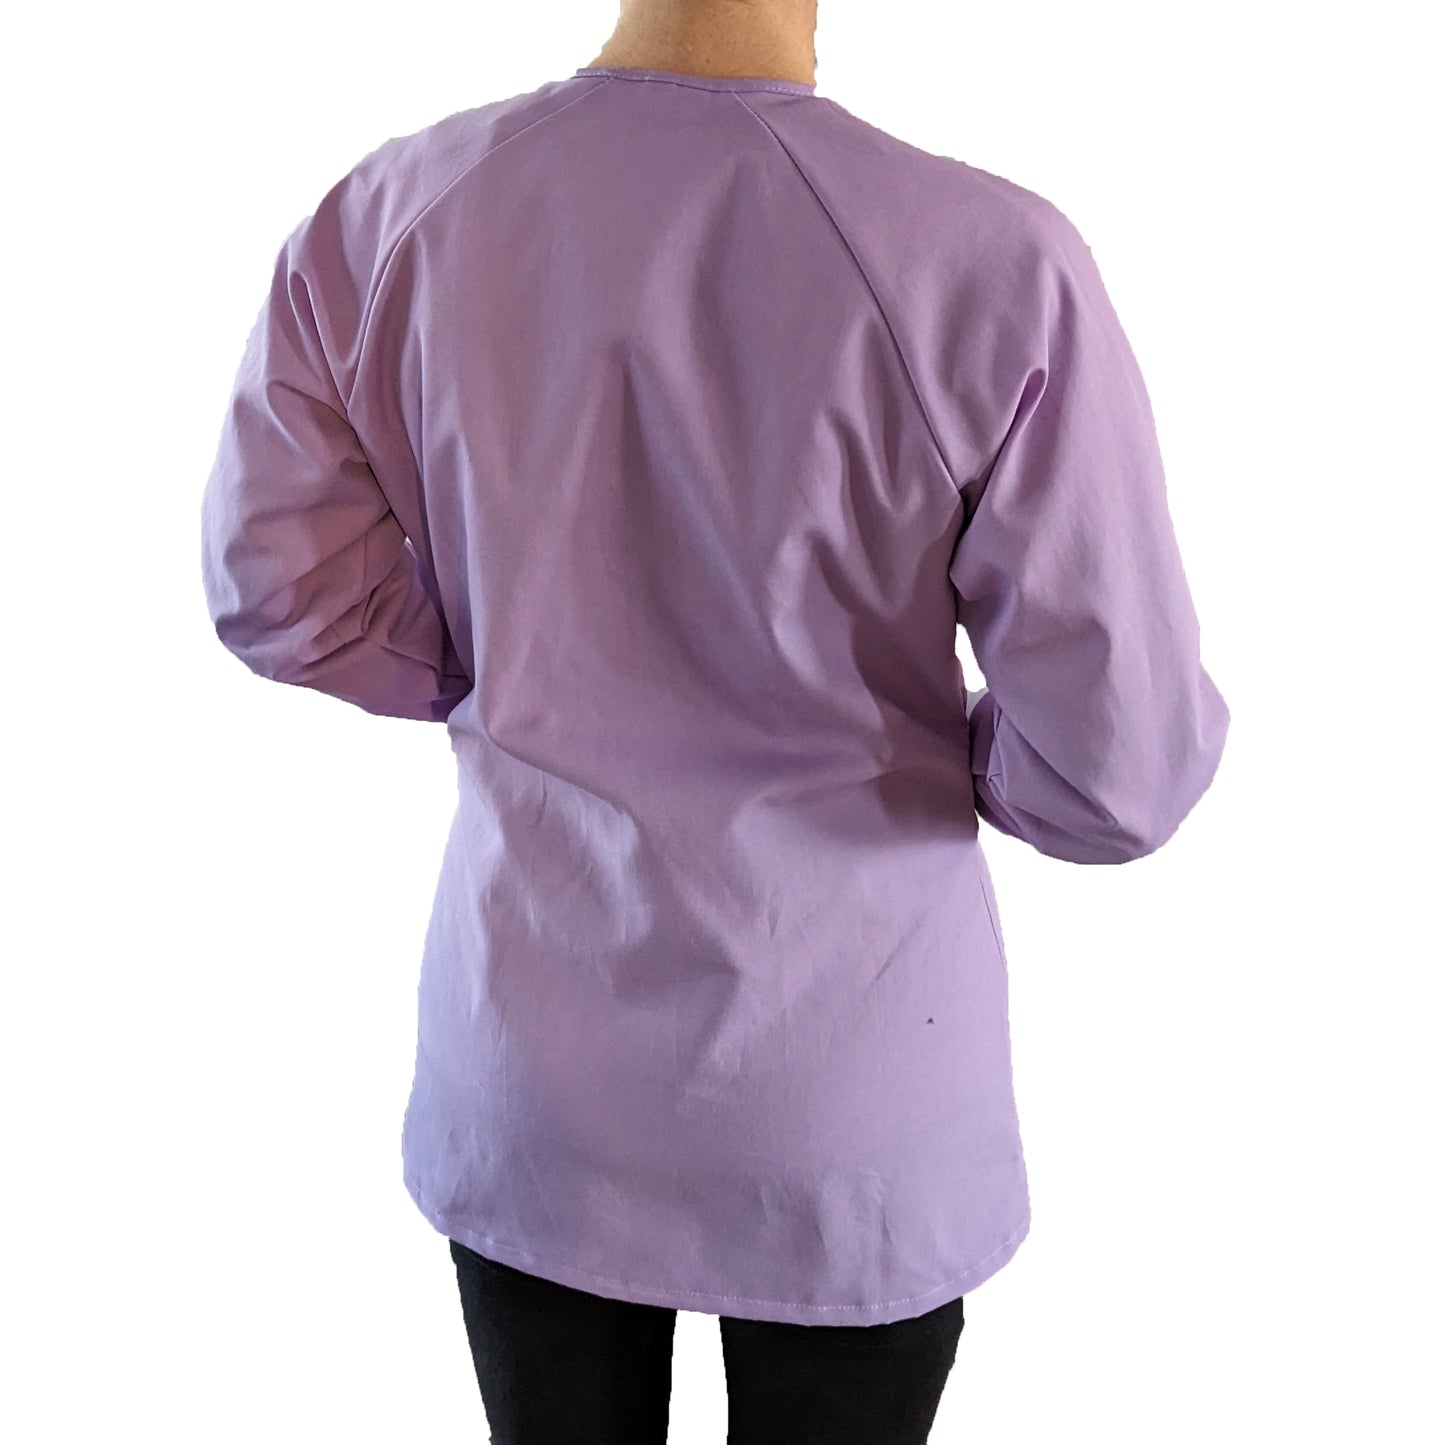 Hygienisis VESTEX Clinic Jacket w/Pockets - Women's